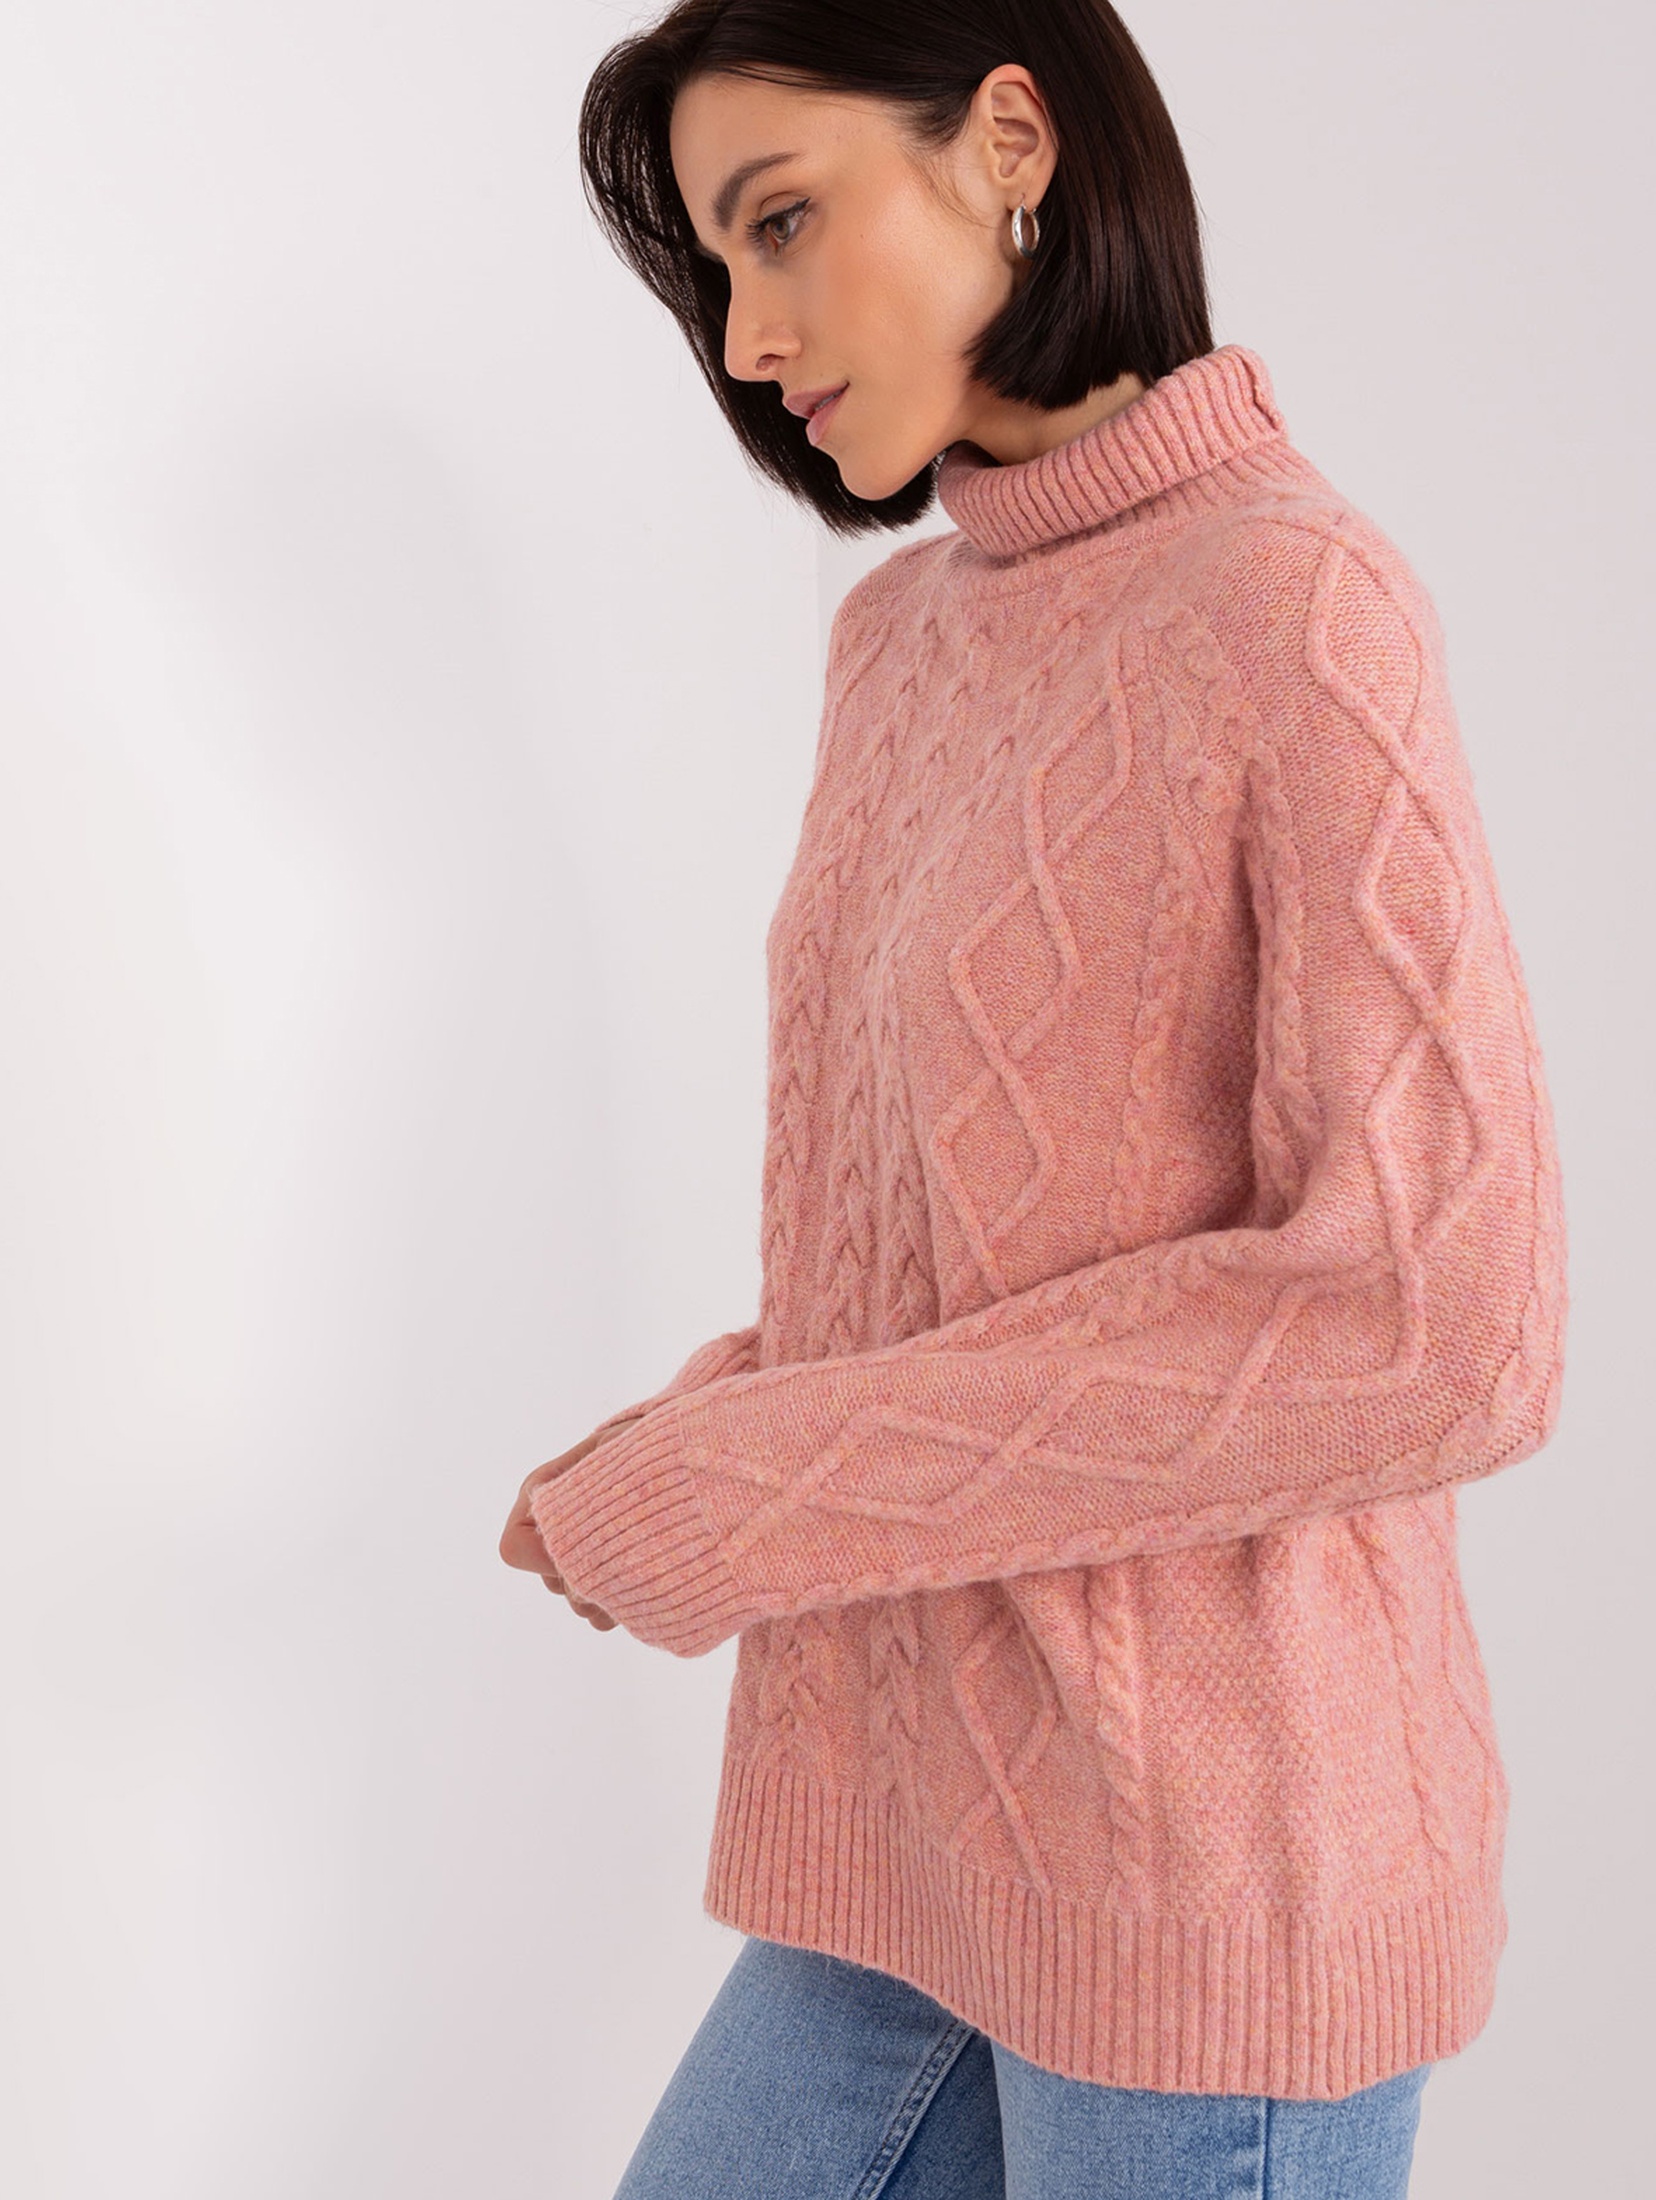 Damski sweter z warkoczami ciemny różowy